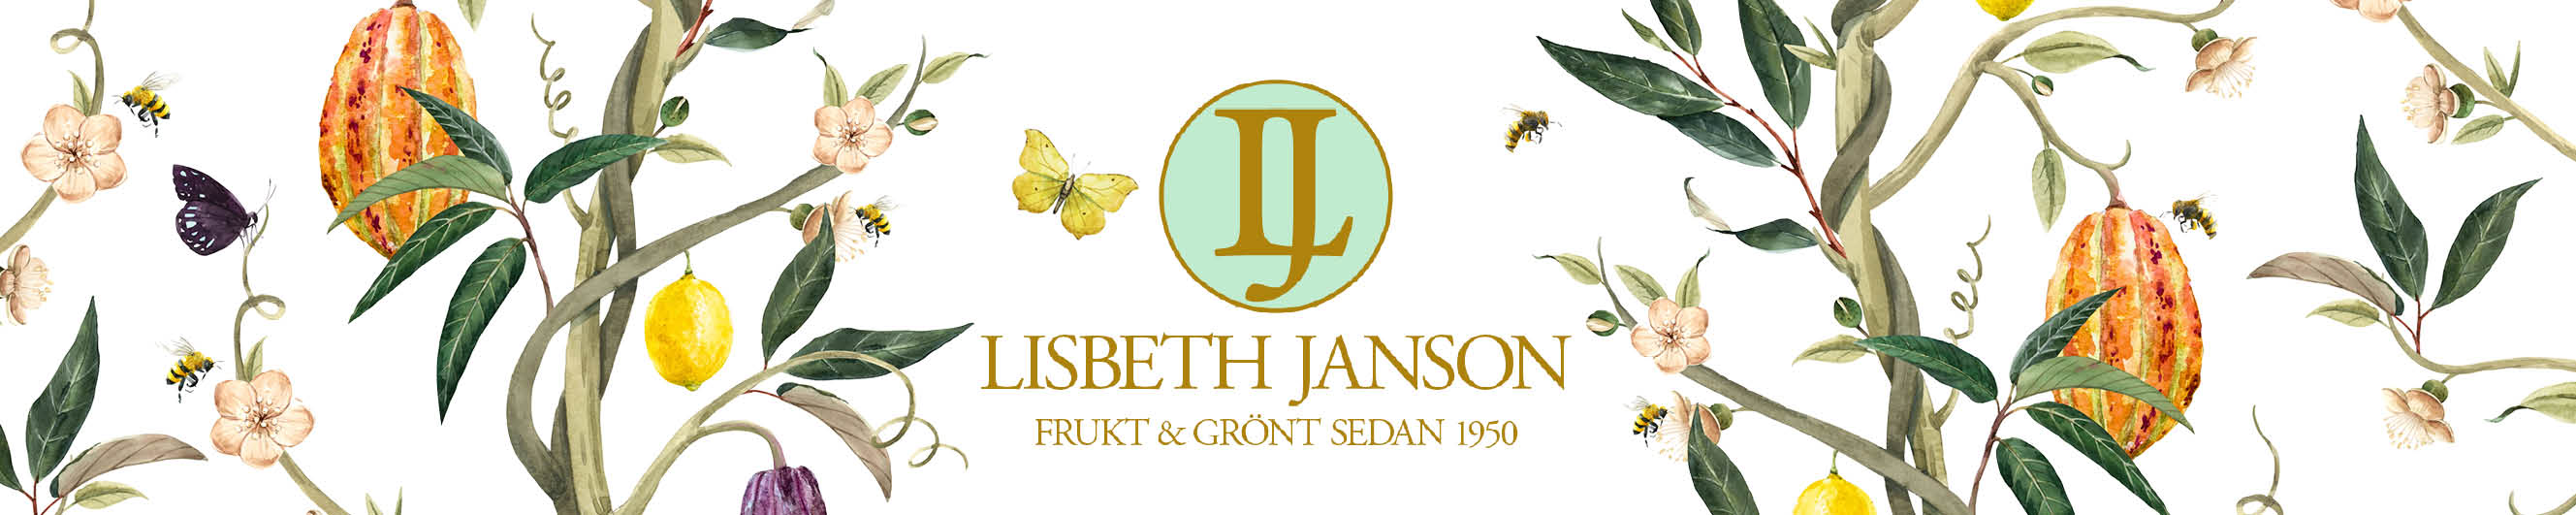 Lisbeth Janson Frukt & Grönt AB